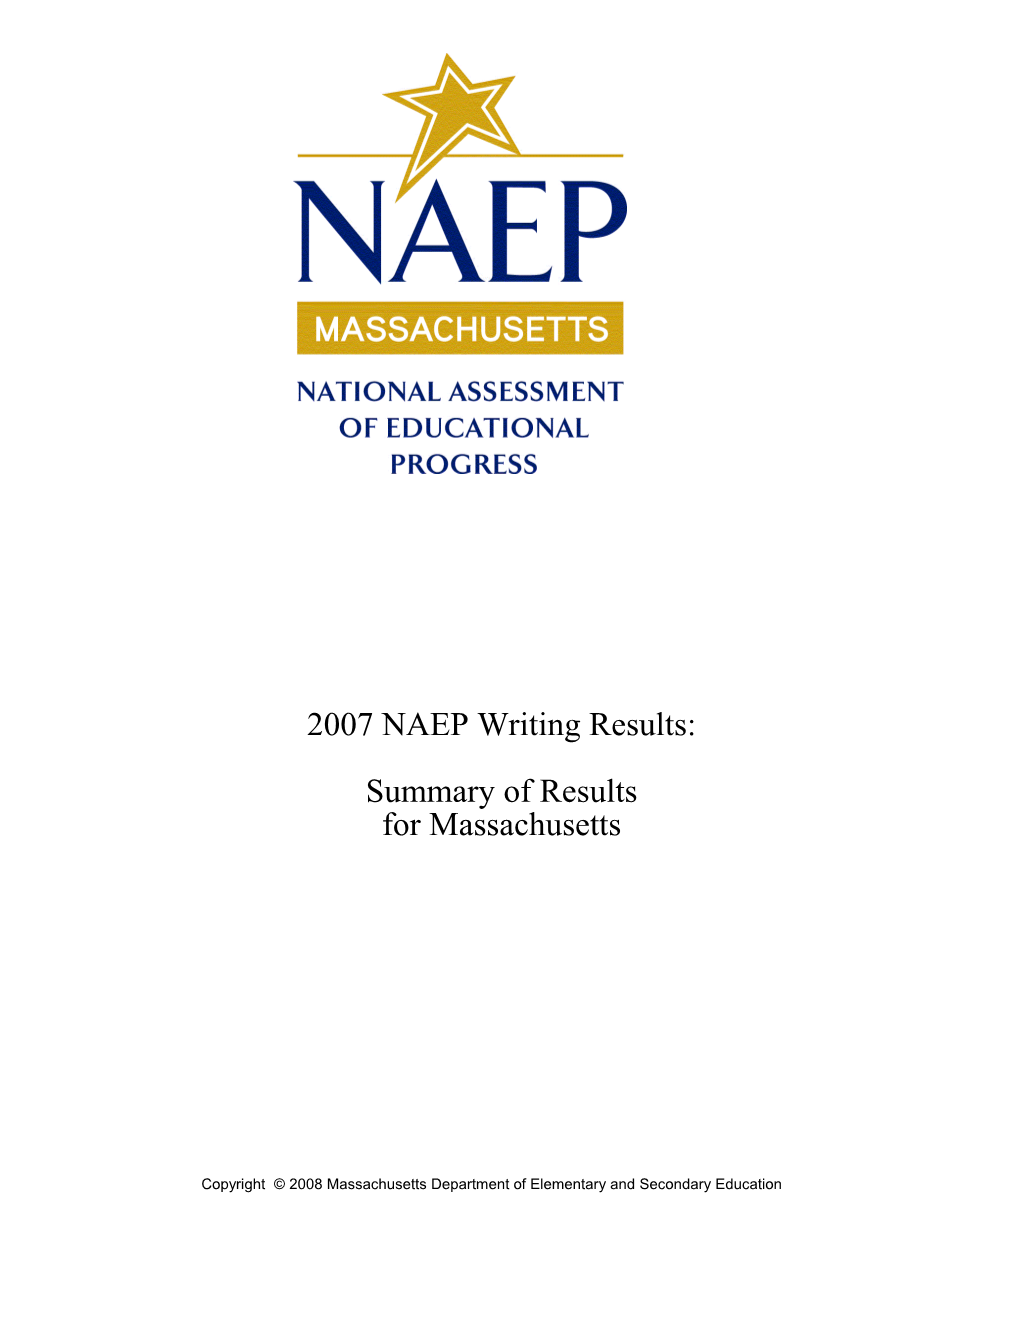 2007 NAEP Writnig Results for Massachusetts